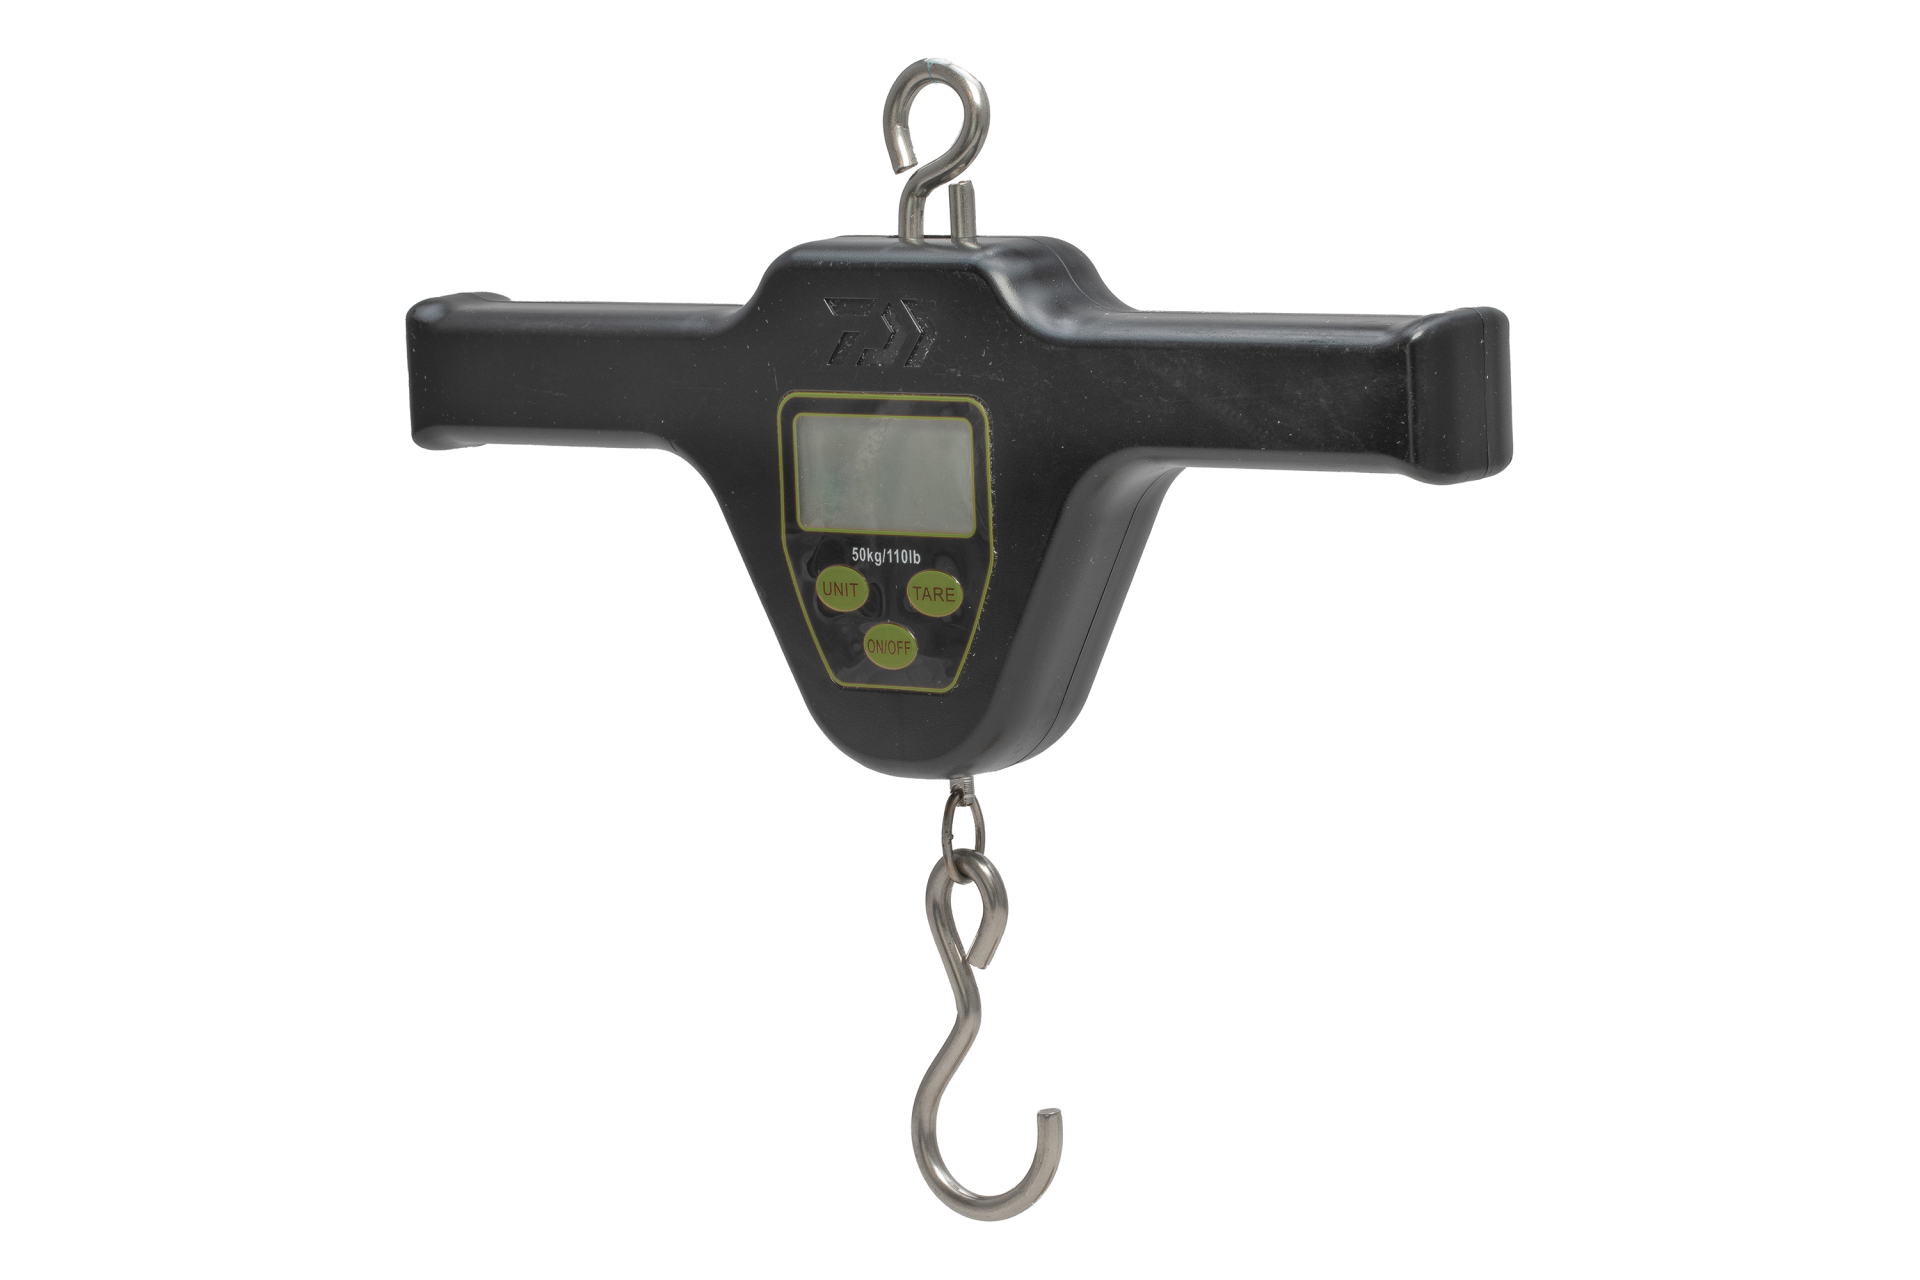 Daiwa Digital T-Bar Scale <span>| Weighing range up to 50kg</span>